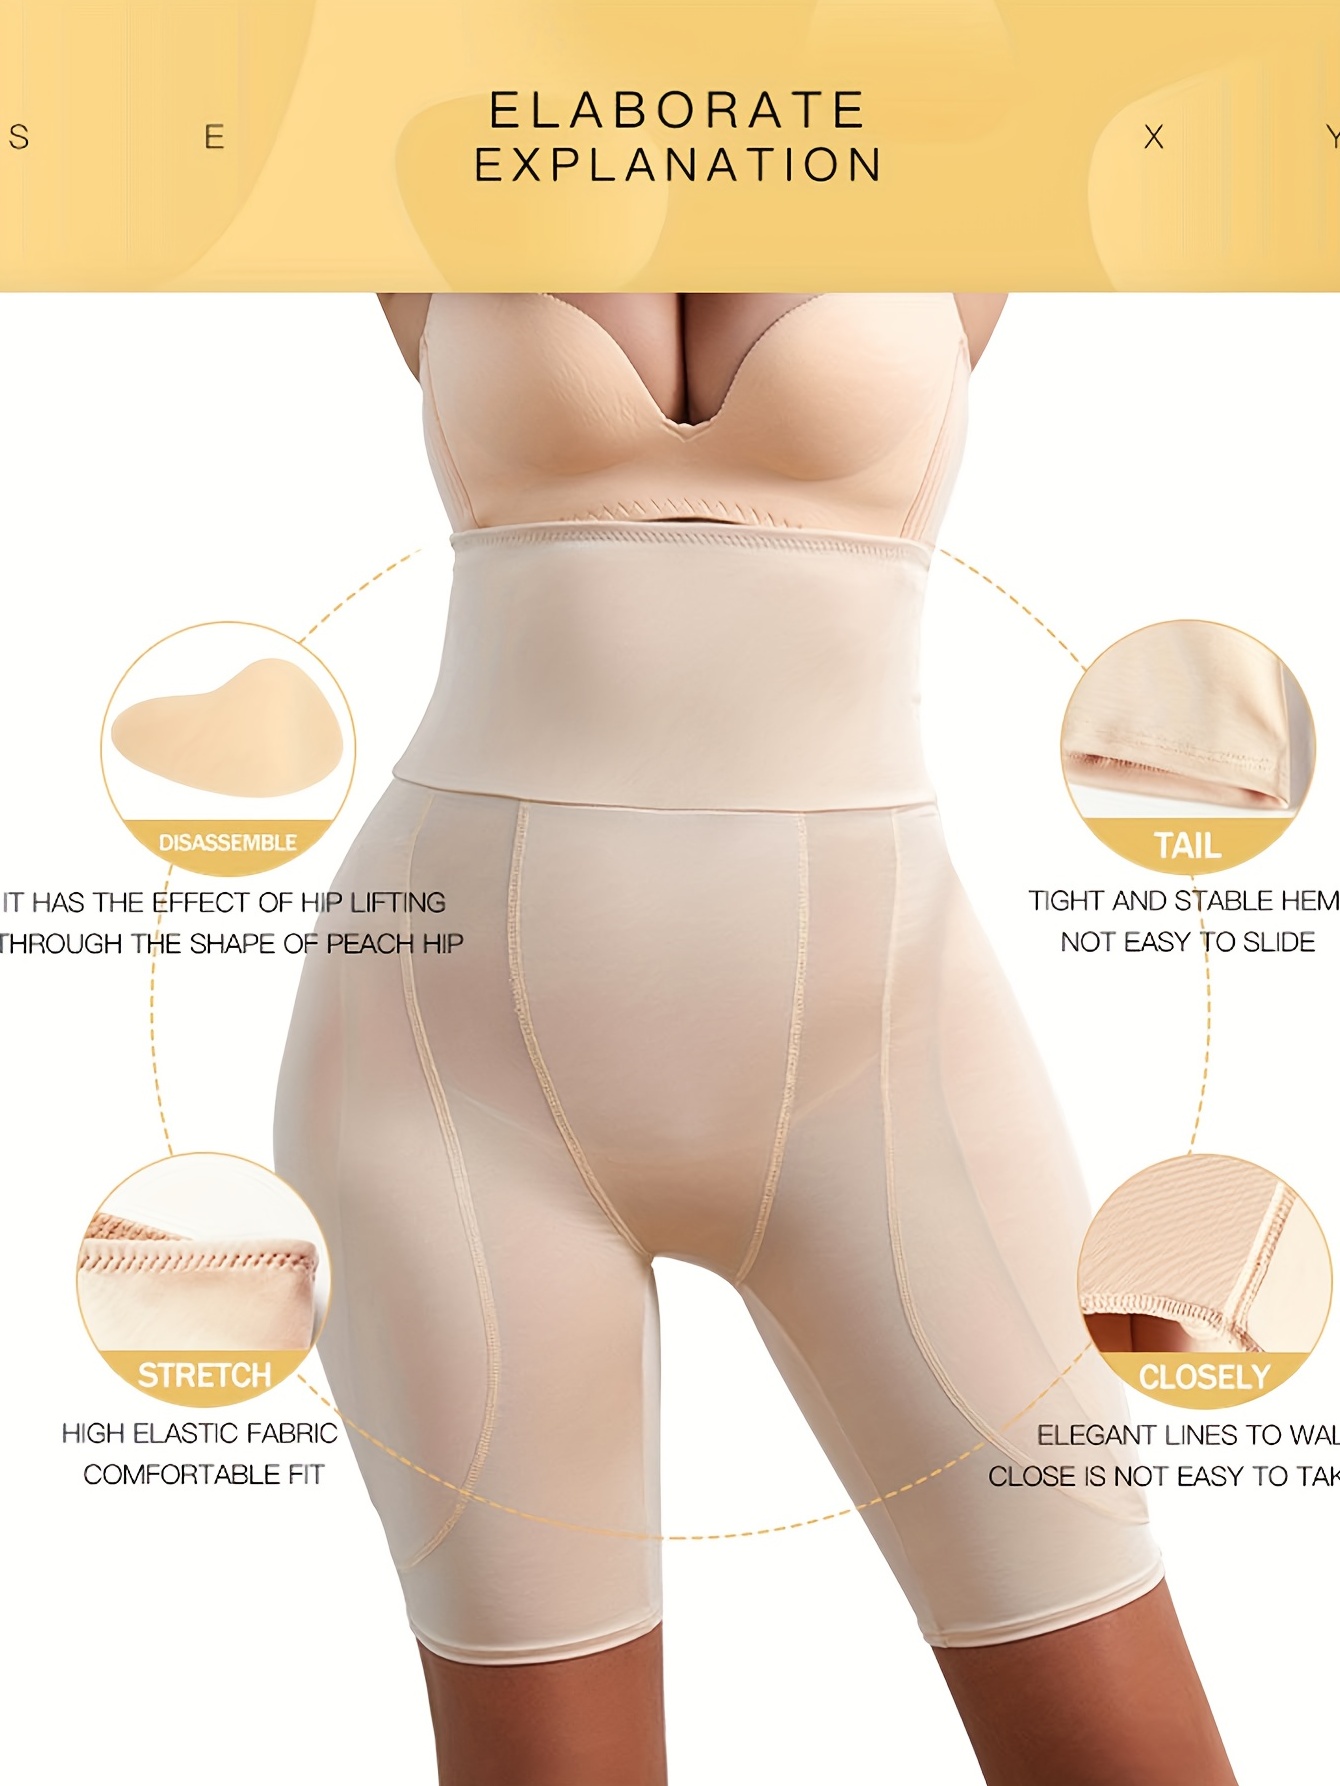 High Waist Tummy Control Everyday Panty Shapewear – TruChic Fashions